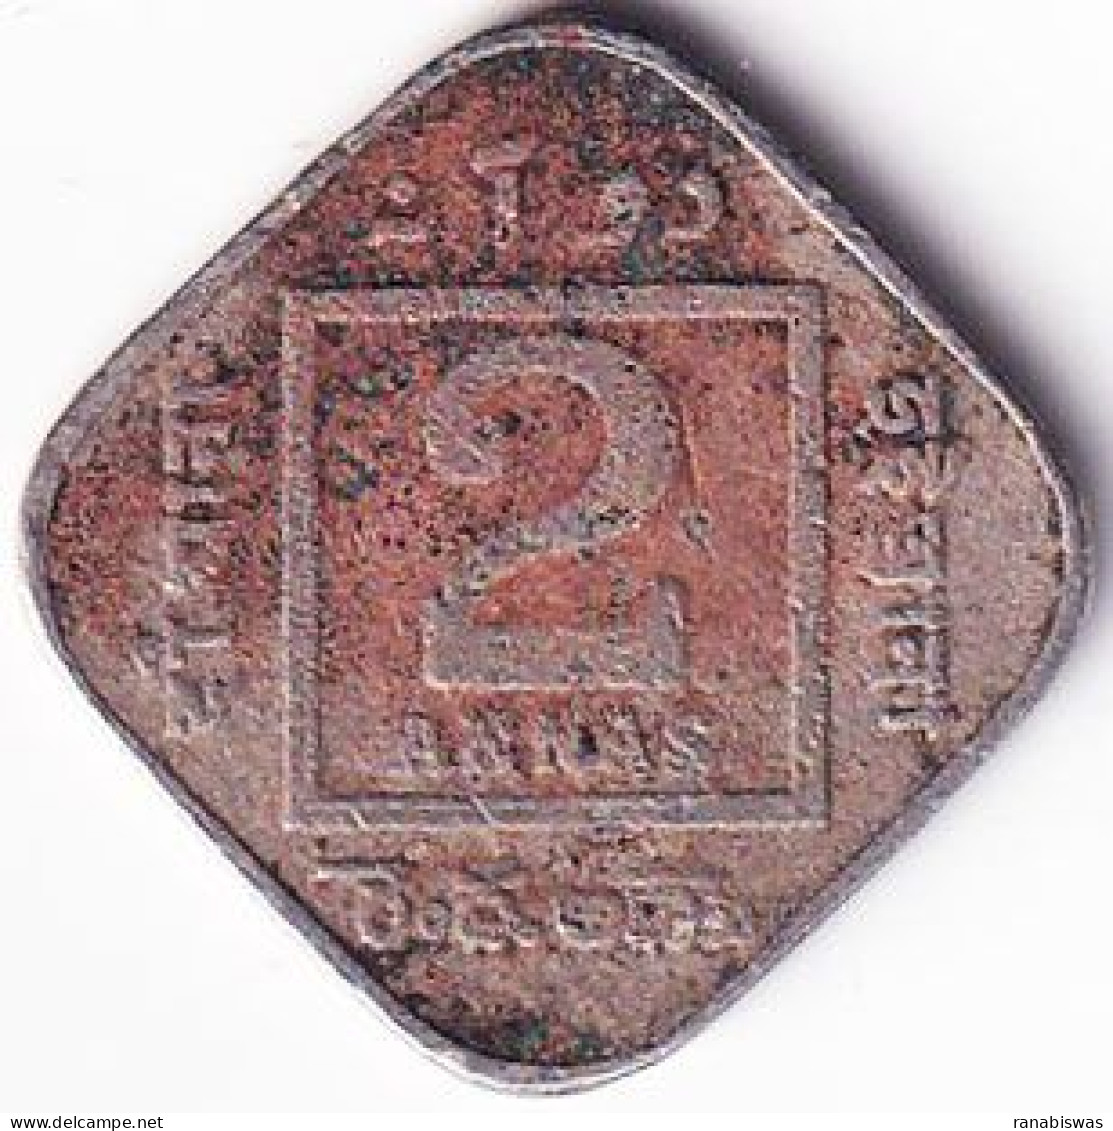 INDIA COIN LOT 177, 2 ANNAS 1919, CALCUTTA MINT, VF, SCARE - India